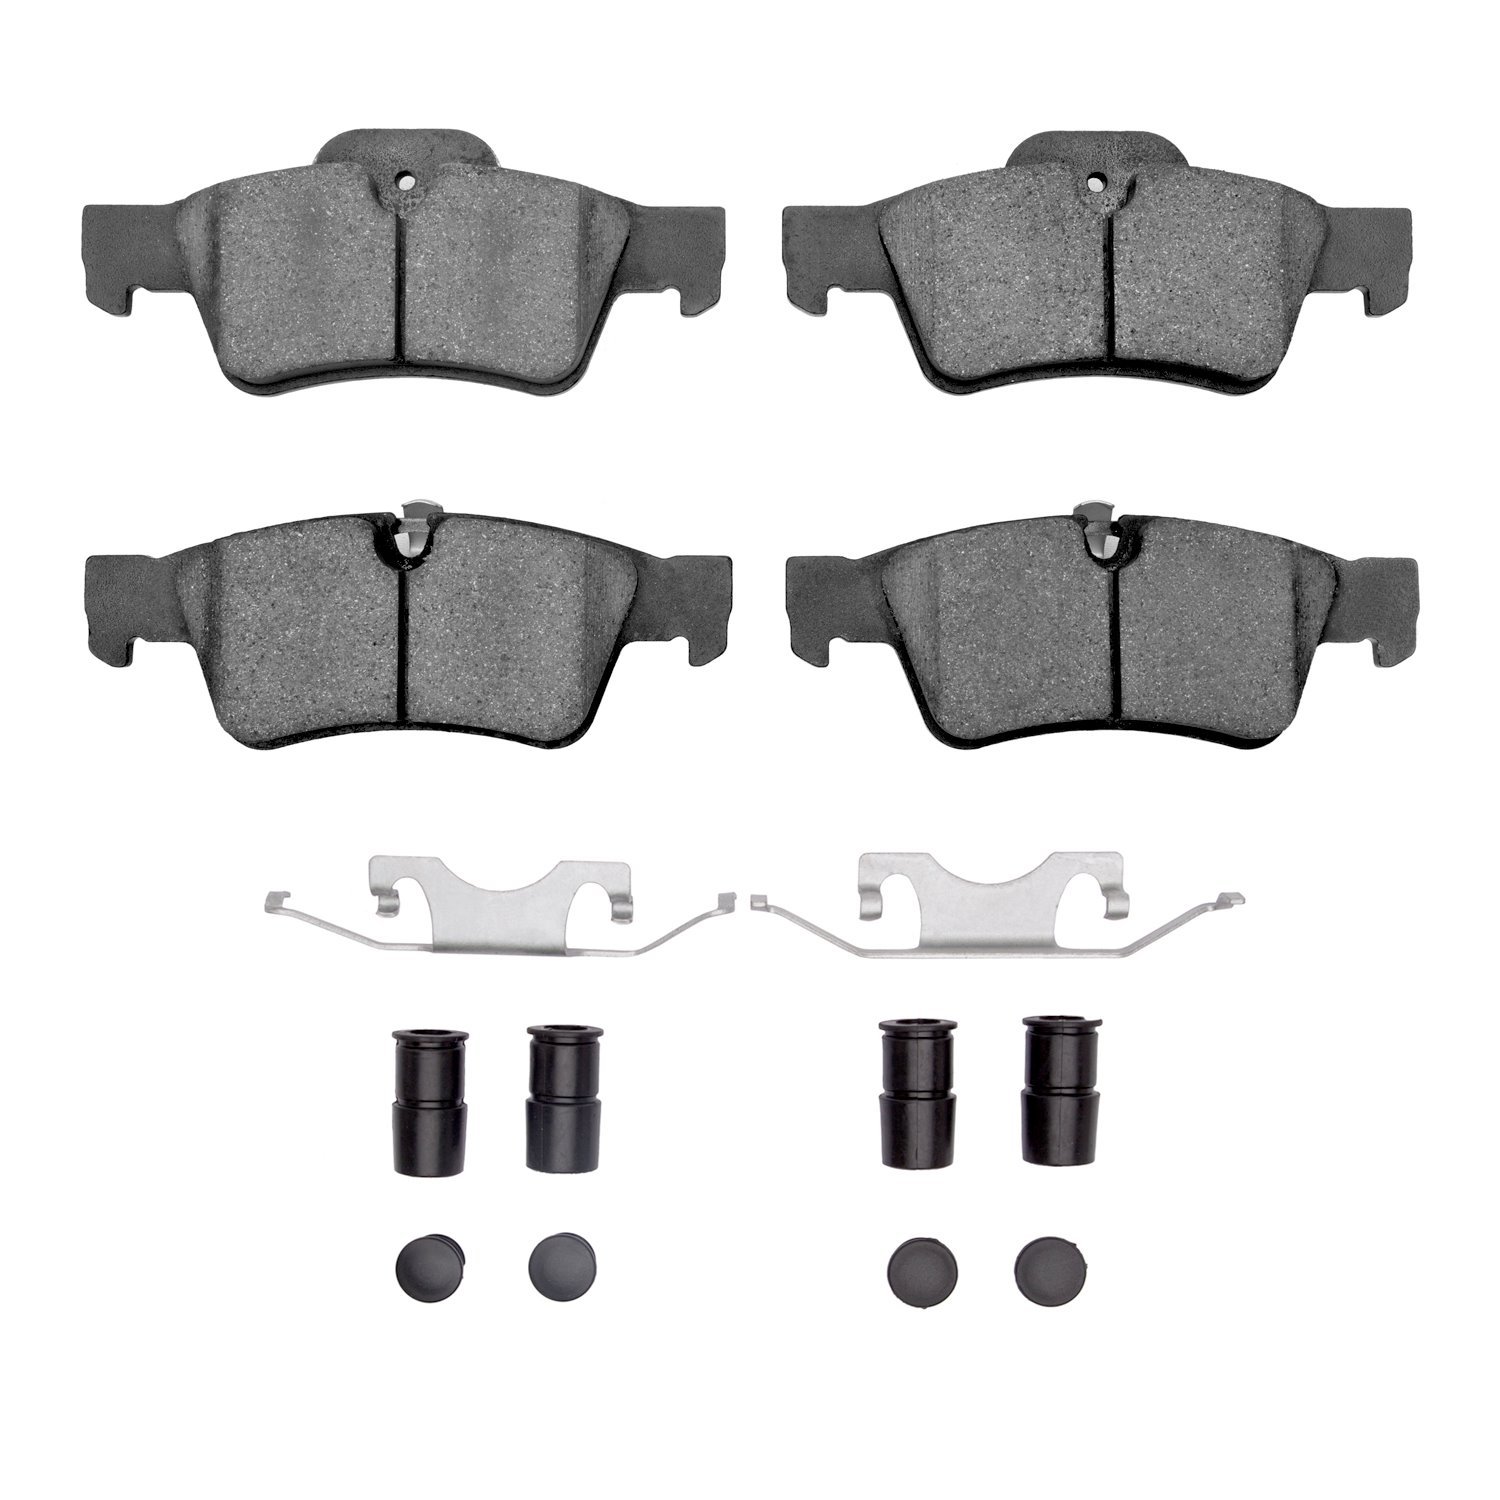 1310-1122-01 3000-Series Ceramic Brake Pads & Hardware Kit, 2005-2018 Mercedes-Benz, Position: Rear